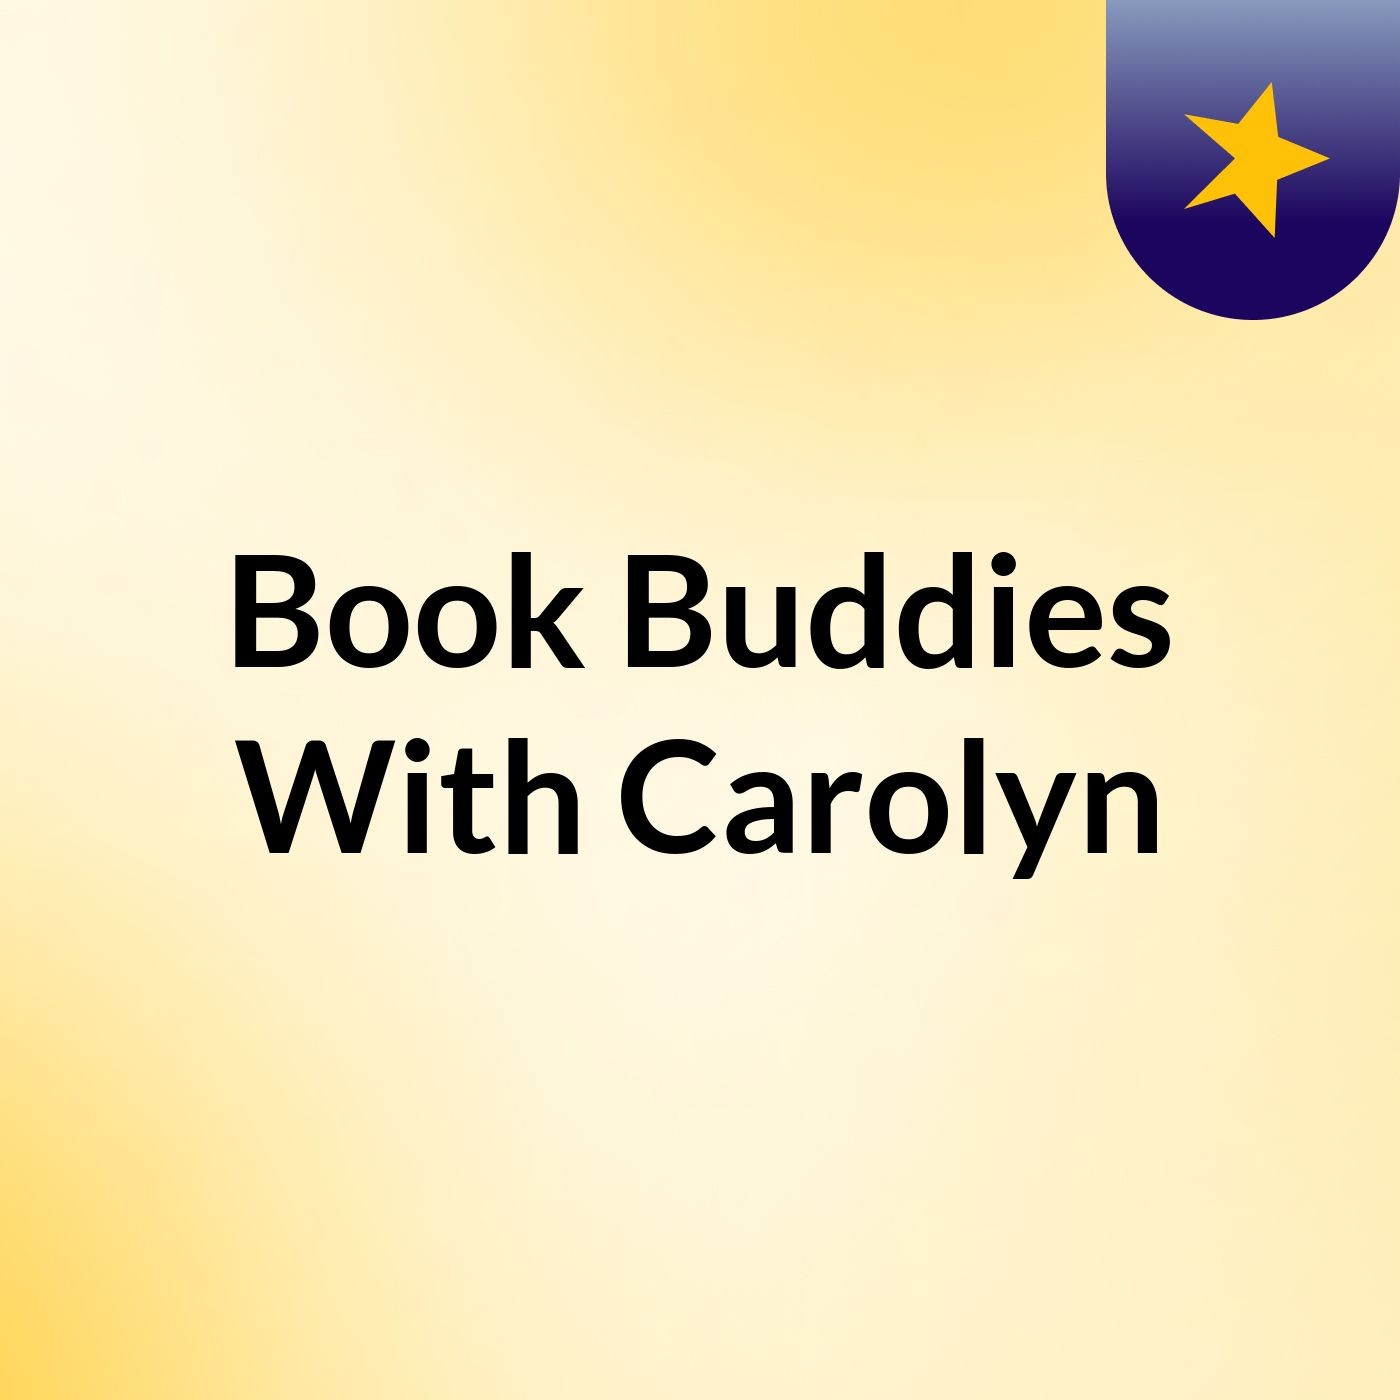 Book Buddies With Carolyn